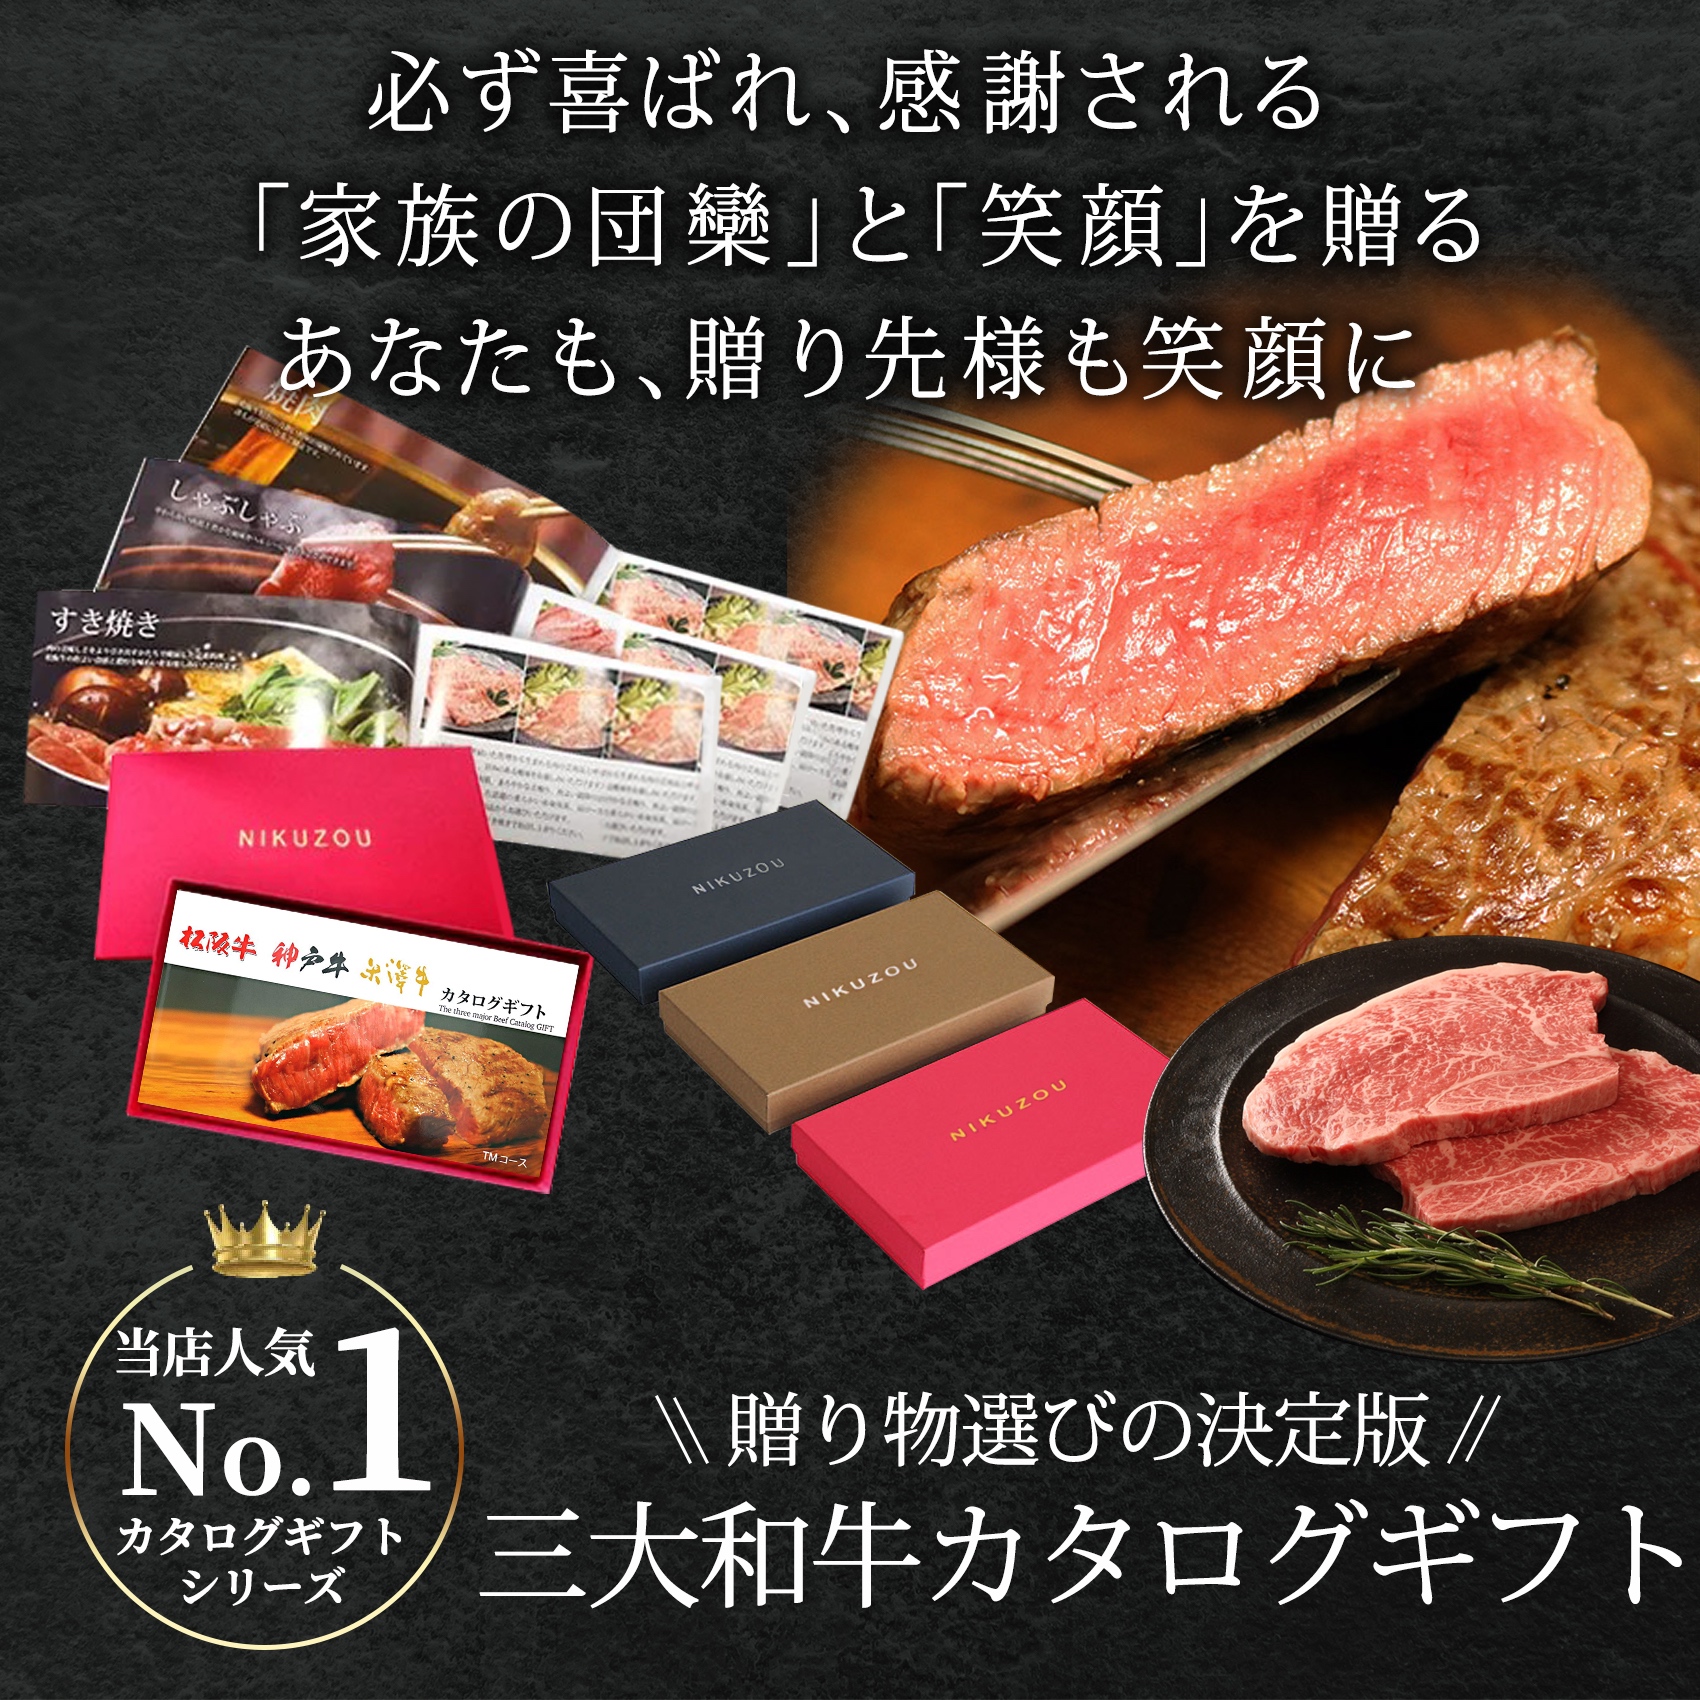 松阪牛・神戸牛・米沢牛 カタログギフト5000円 通販 お肉のギフトなら肉贈 選べる肉カタログギフト